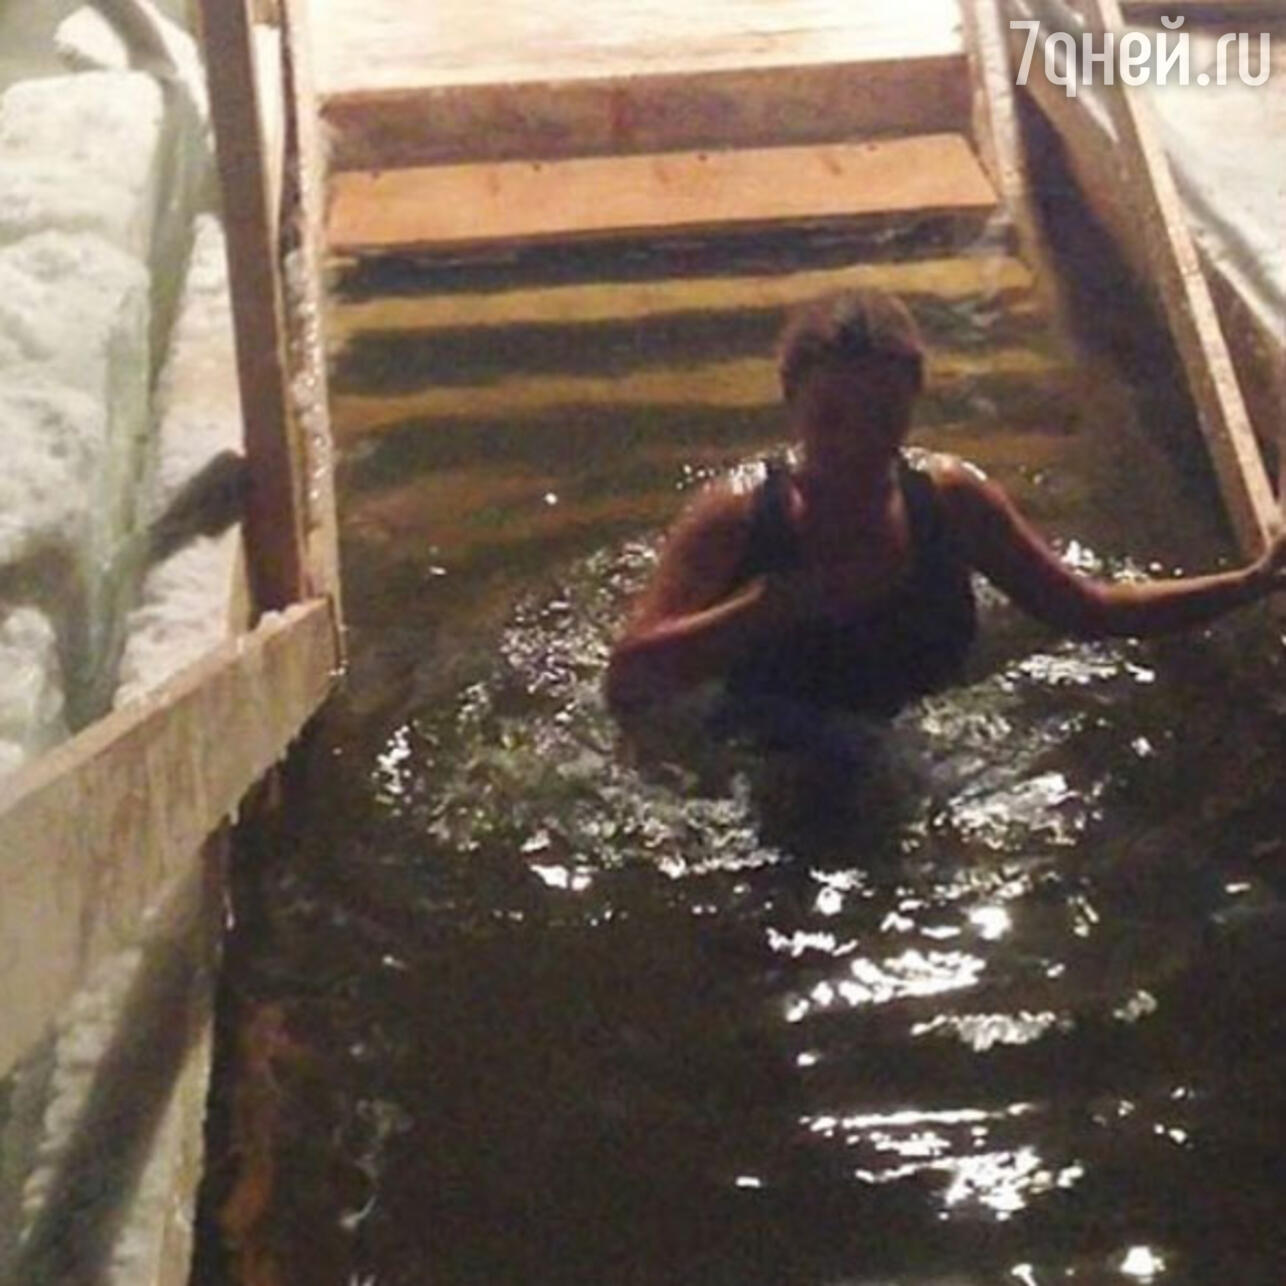 Девка на крещение голая купается (ФОТО)